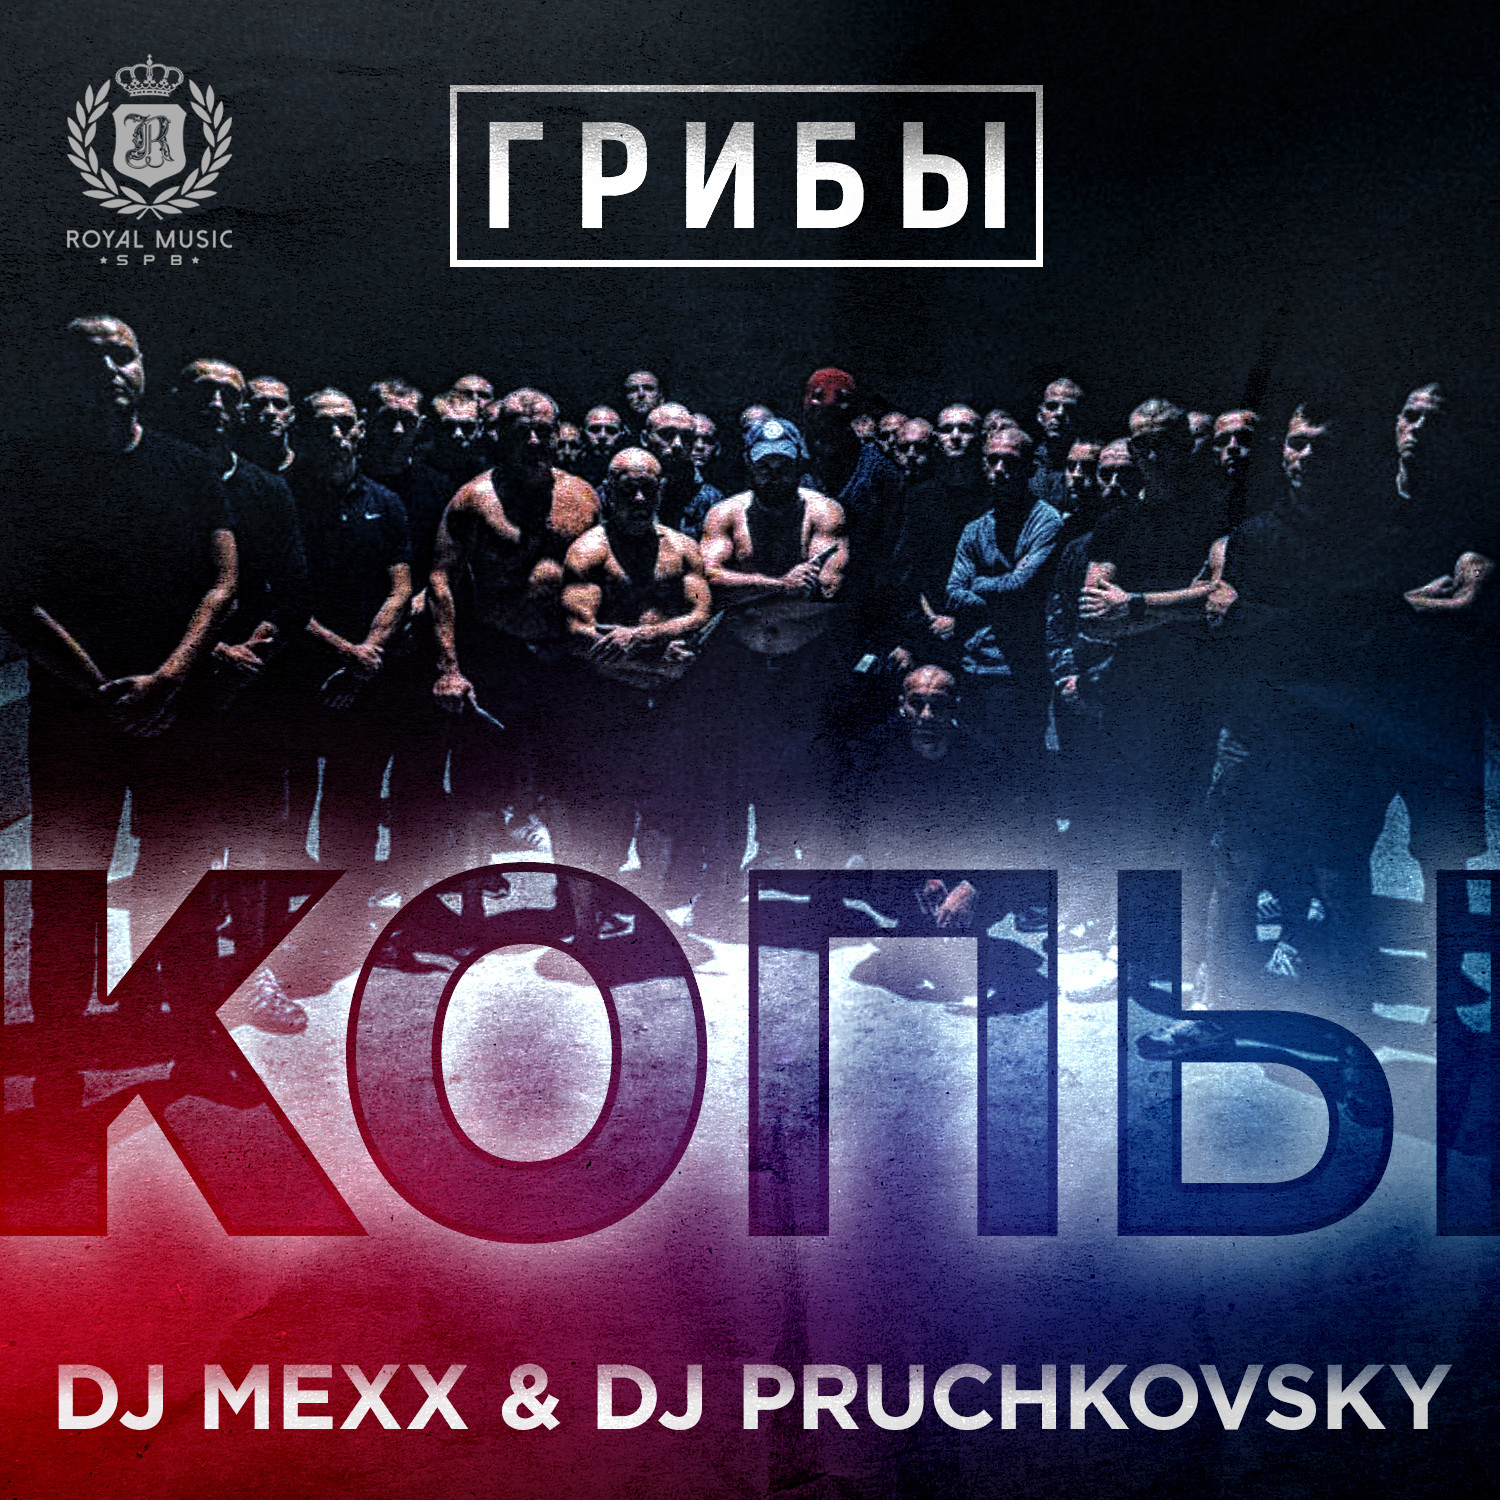 Грибы - Копы (DJ Mexx & DJ Pruchkovsky Remix) – SLAVA MEXX (DJ MEXX)